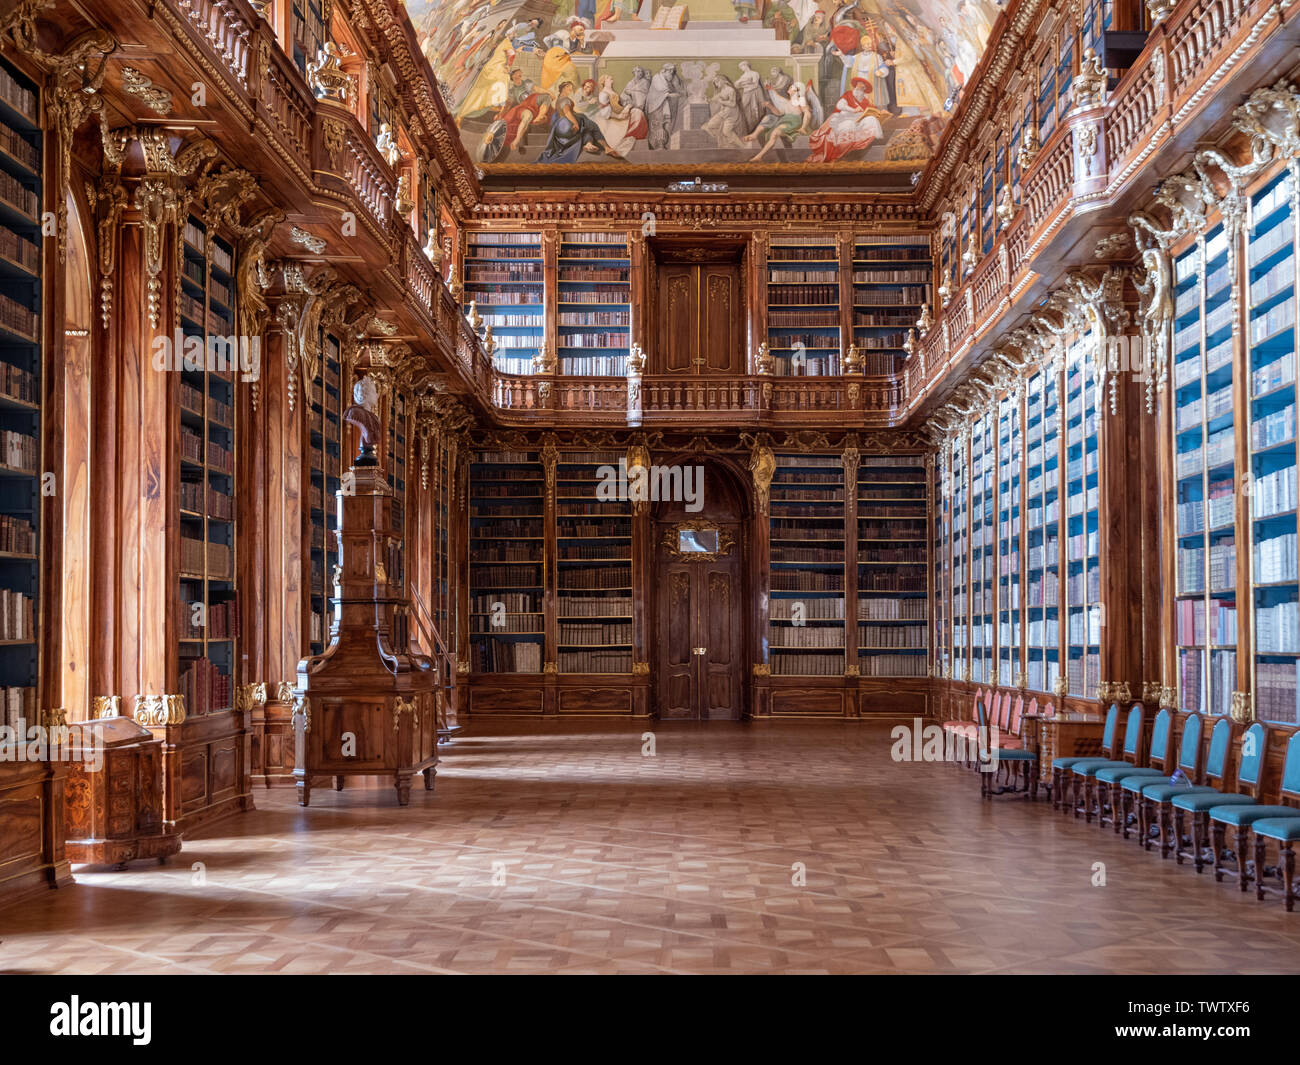 Prague, République Tchèque - 8 juin 2019 : l'intérieur de monastère de Strahov Bibliothèque, la salle de philosophie. Une célèbre bibliothèque Baroque en Bohême. Banque D'Images